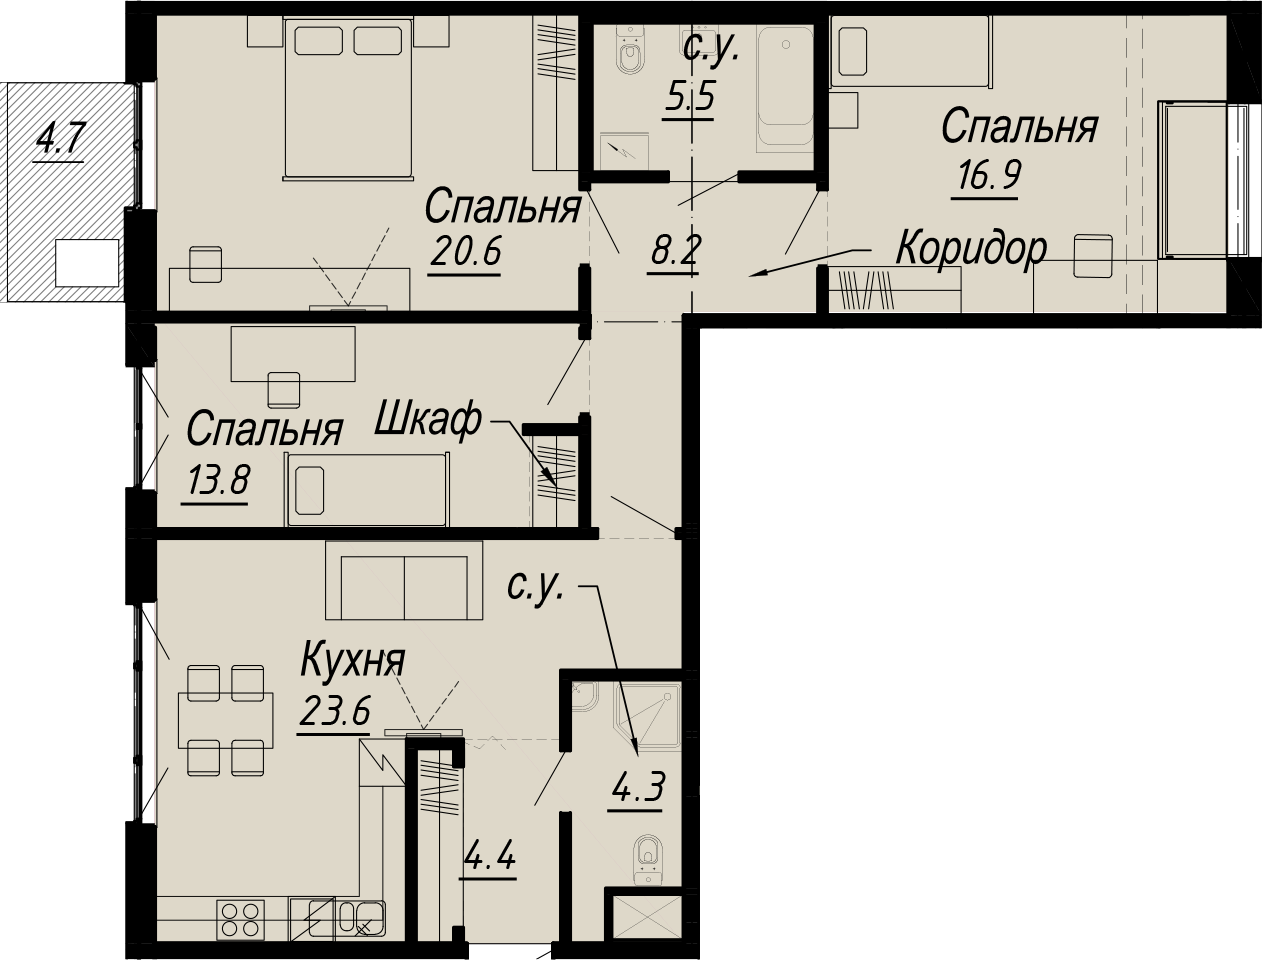 3-комнатная квартира  №10-7 в Meltzer Hall: 99.6 м², этаж 7 - купить в Санкт-Петербурге